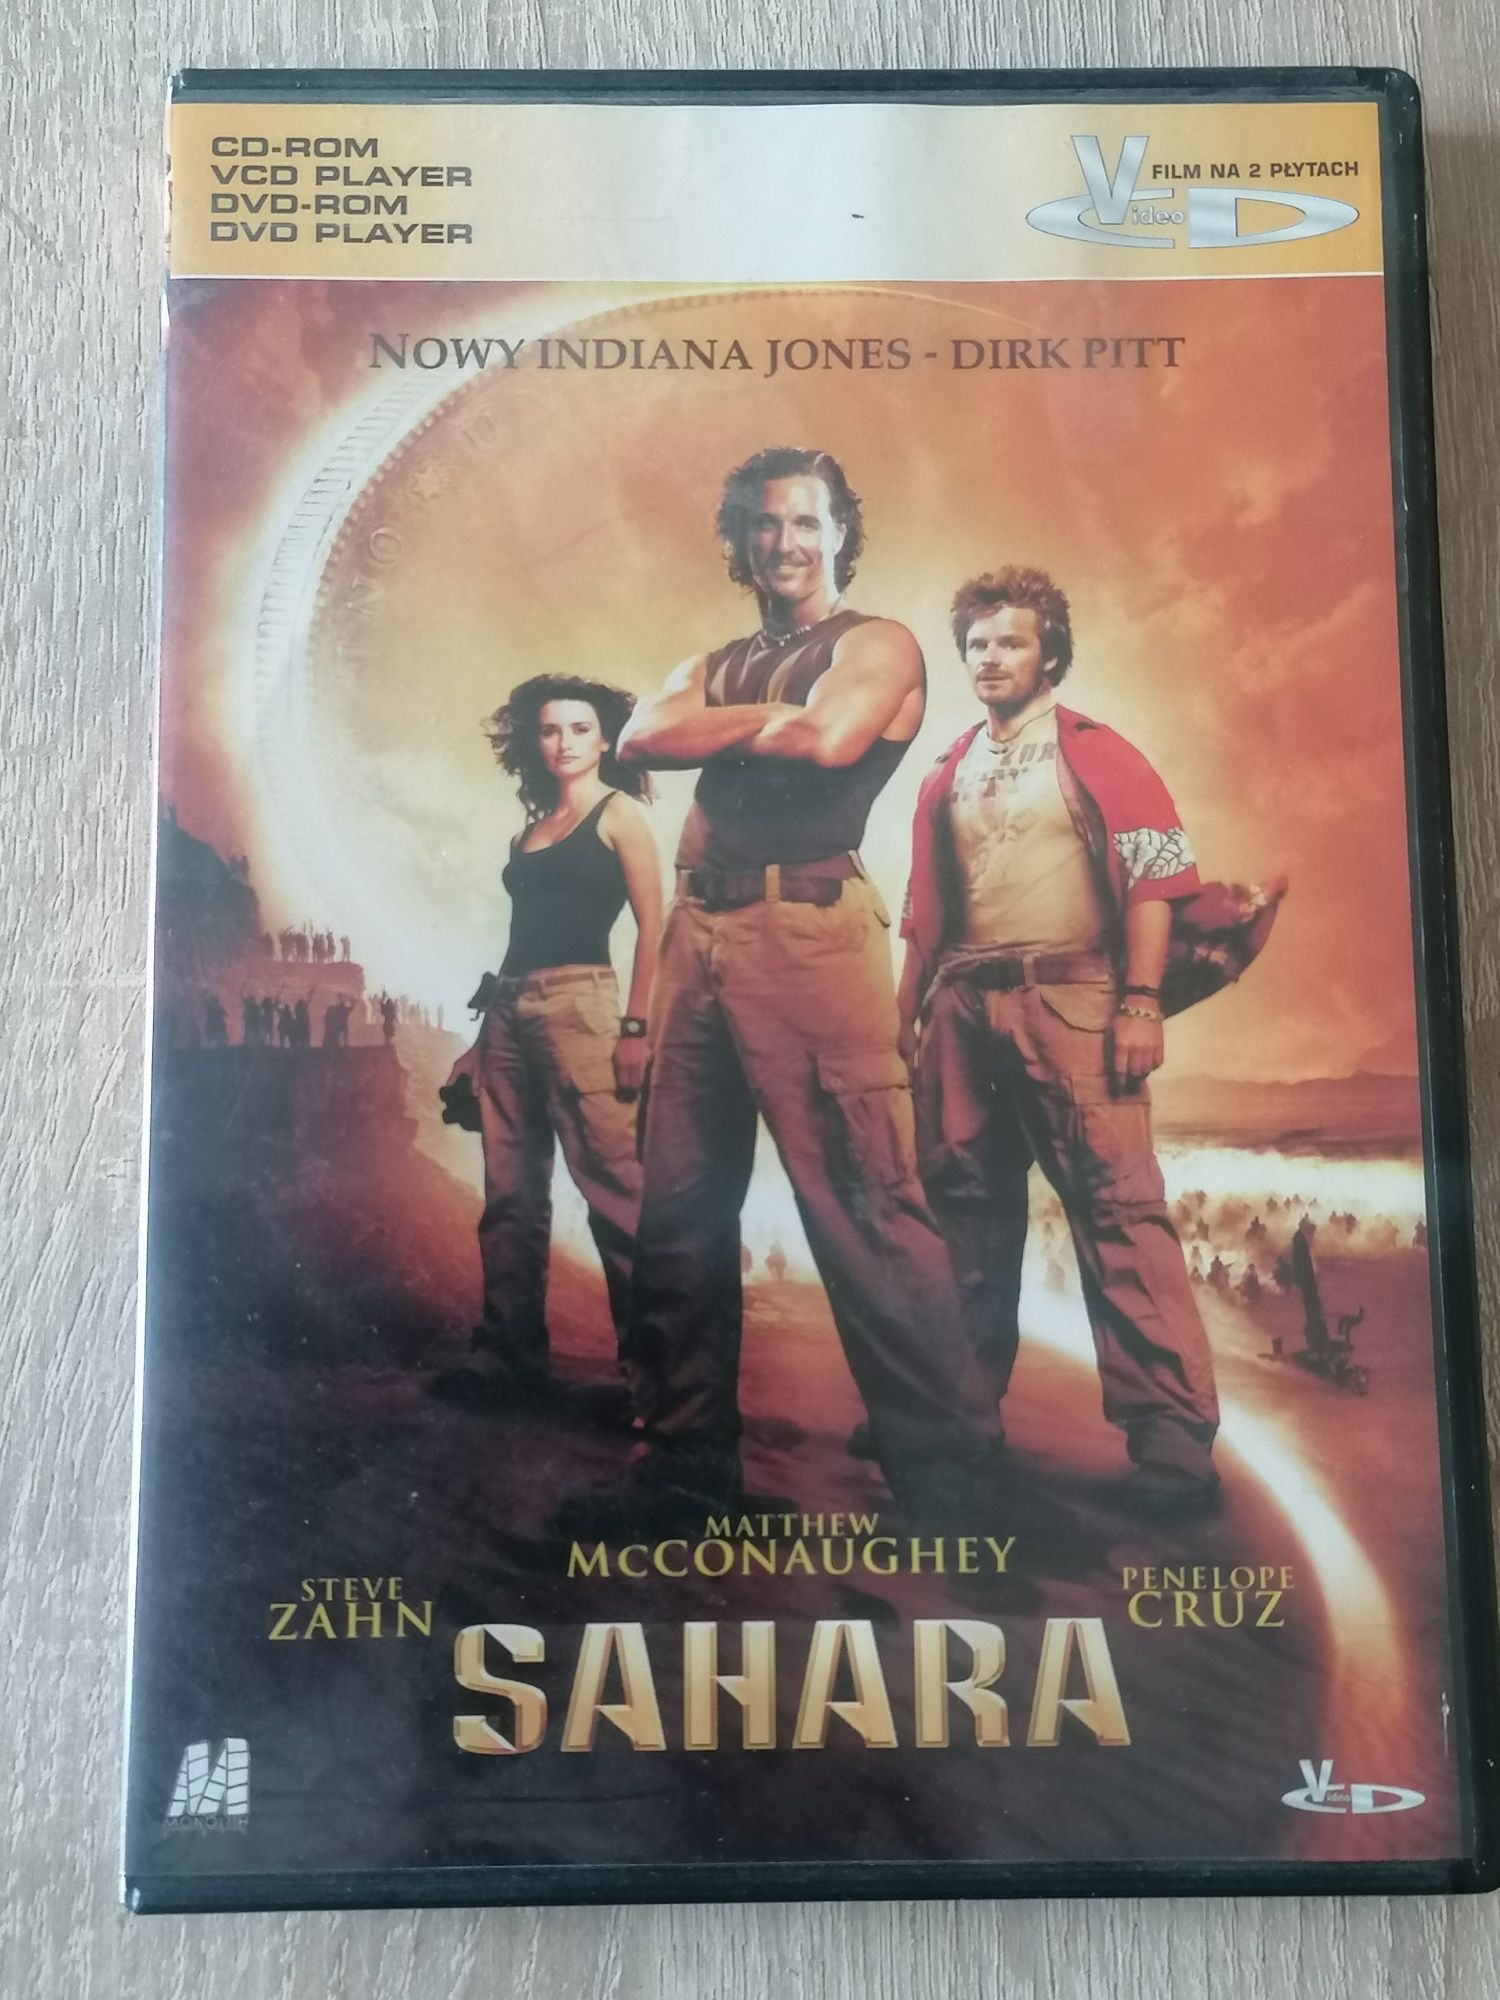 SAHARA - film vcd